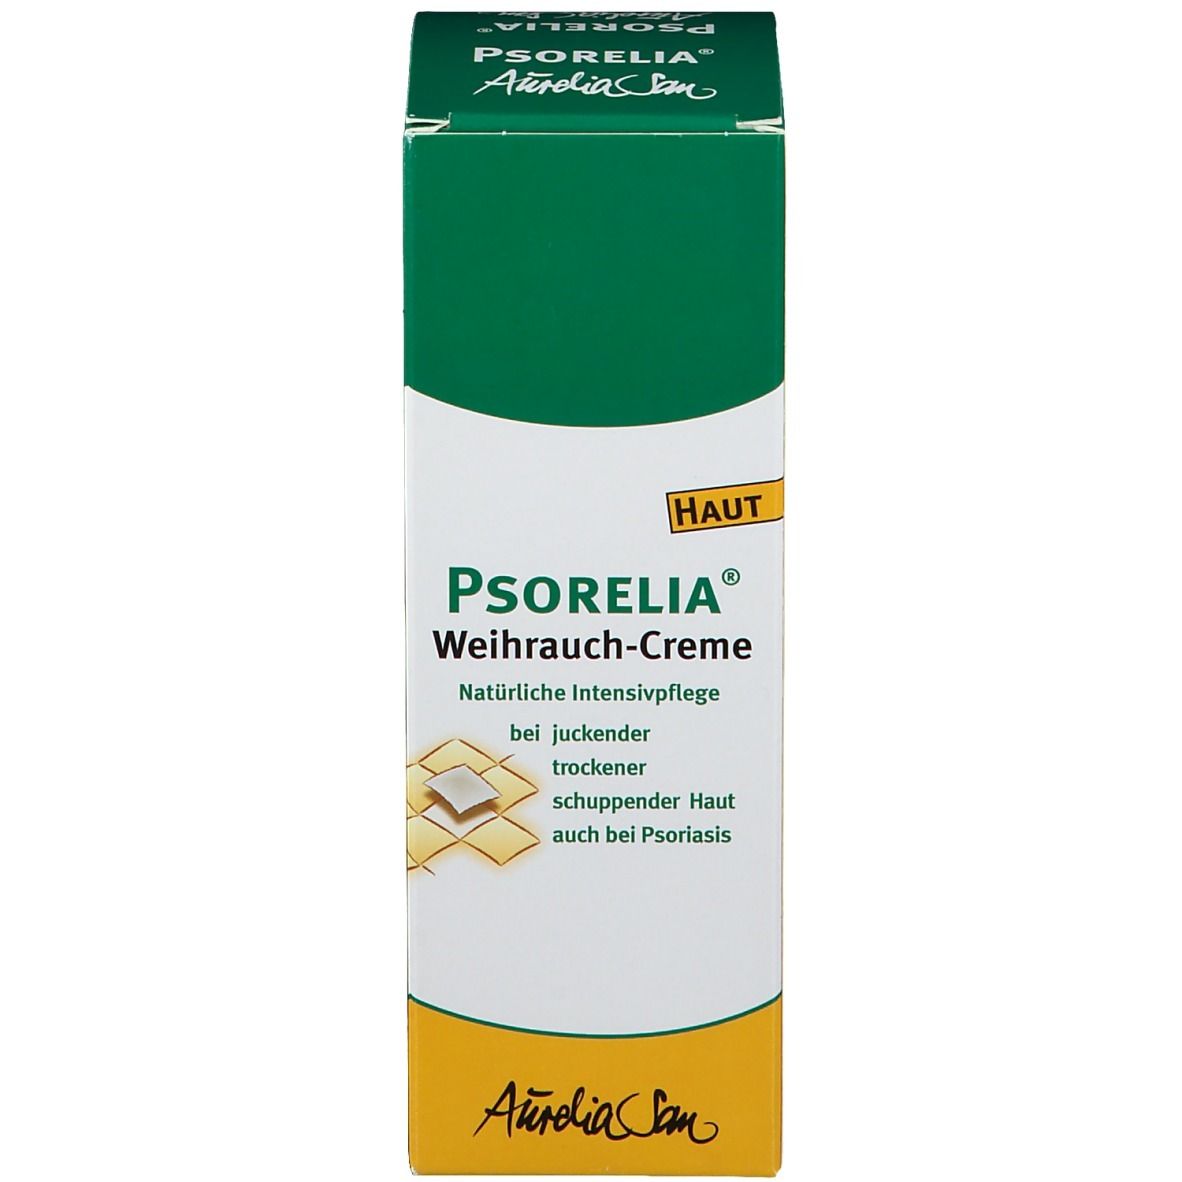 Psorelia® Weihrauch-Creme